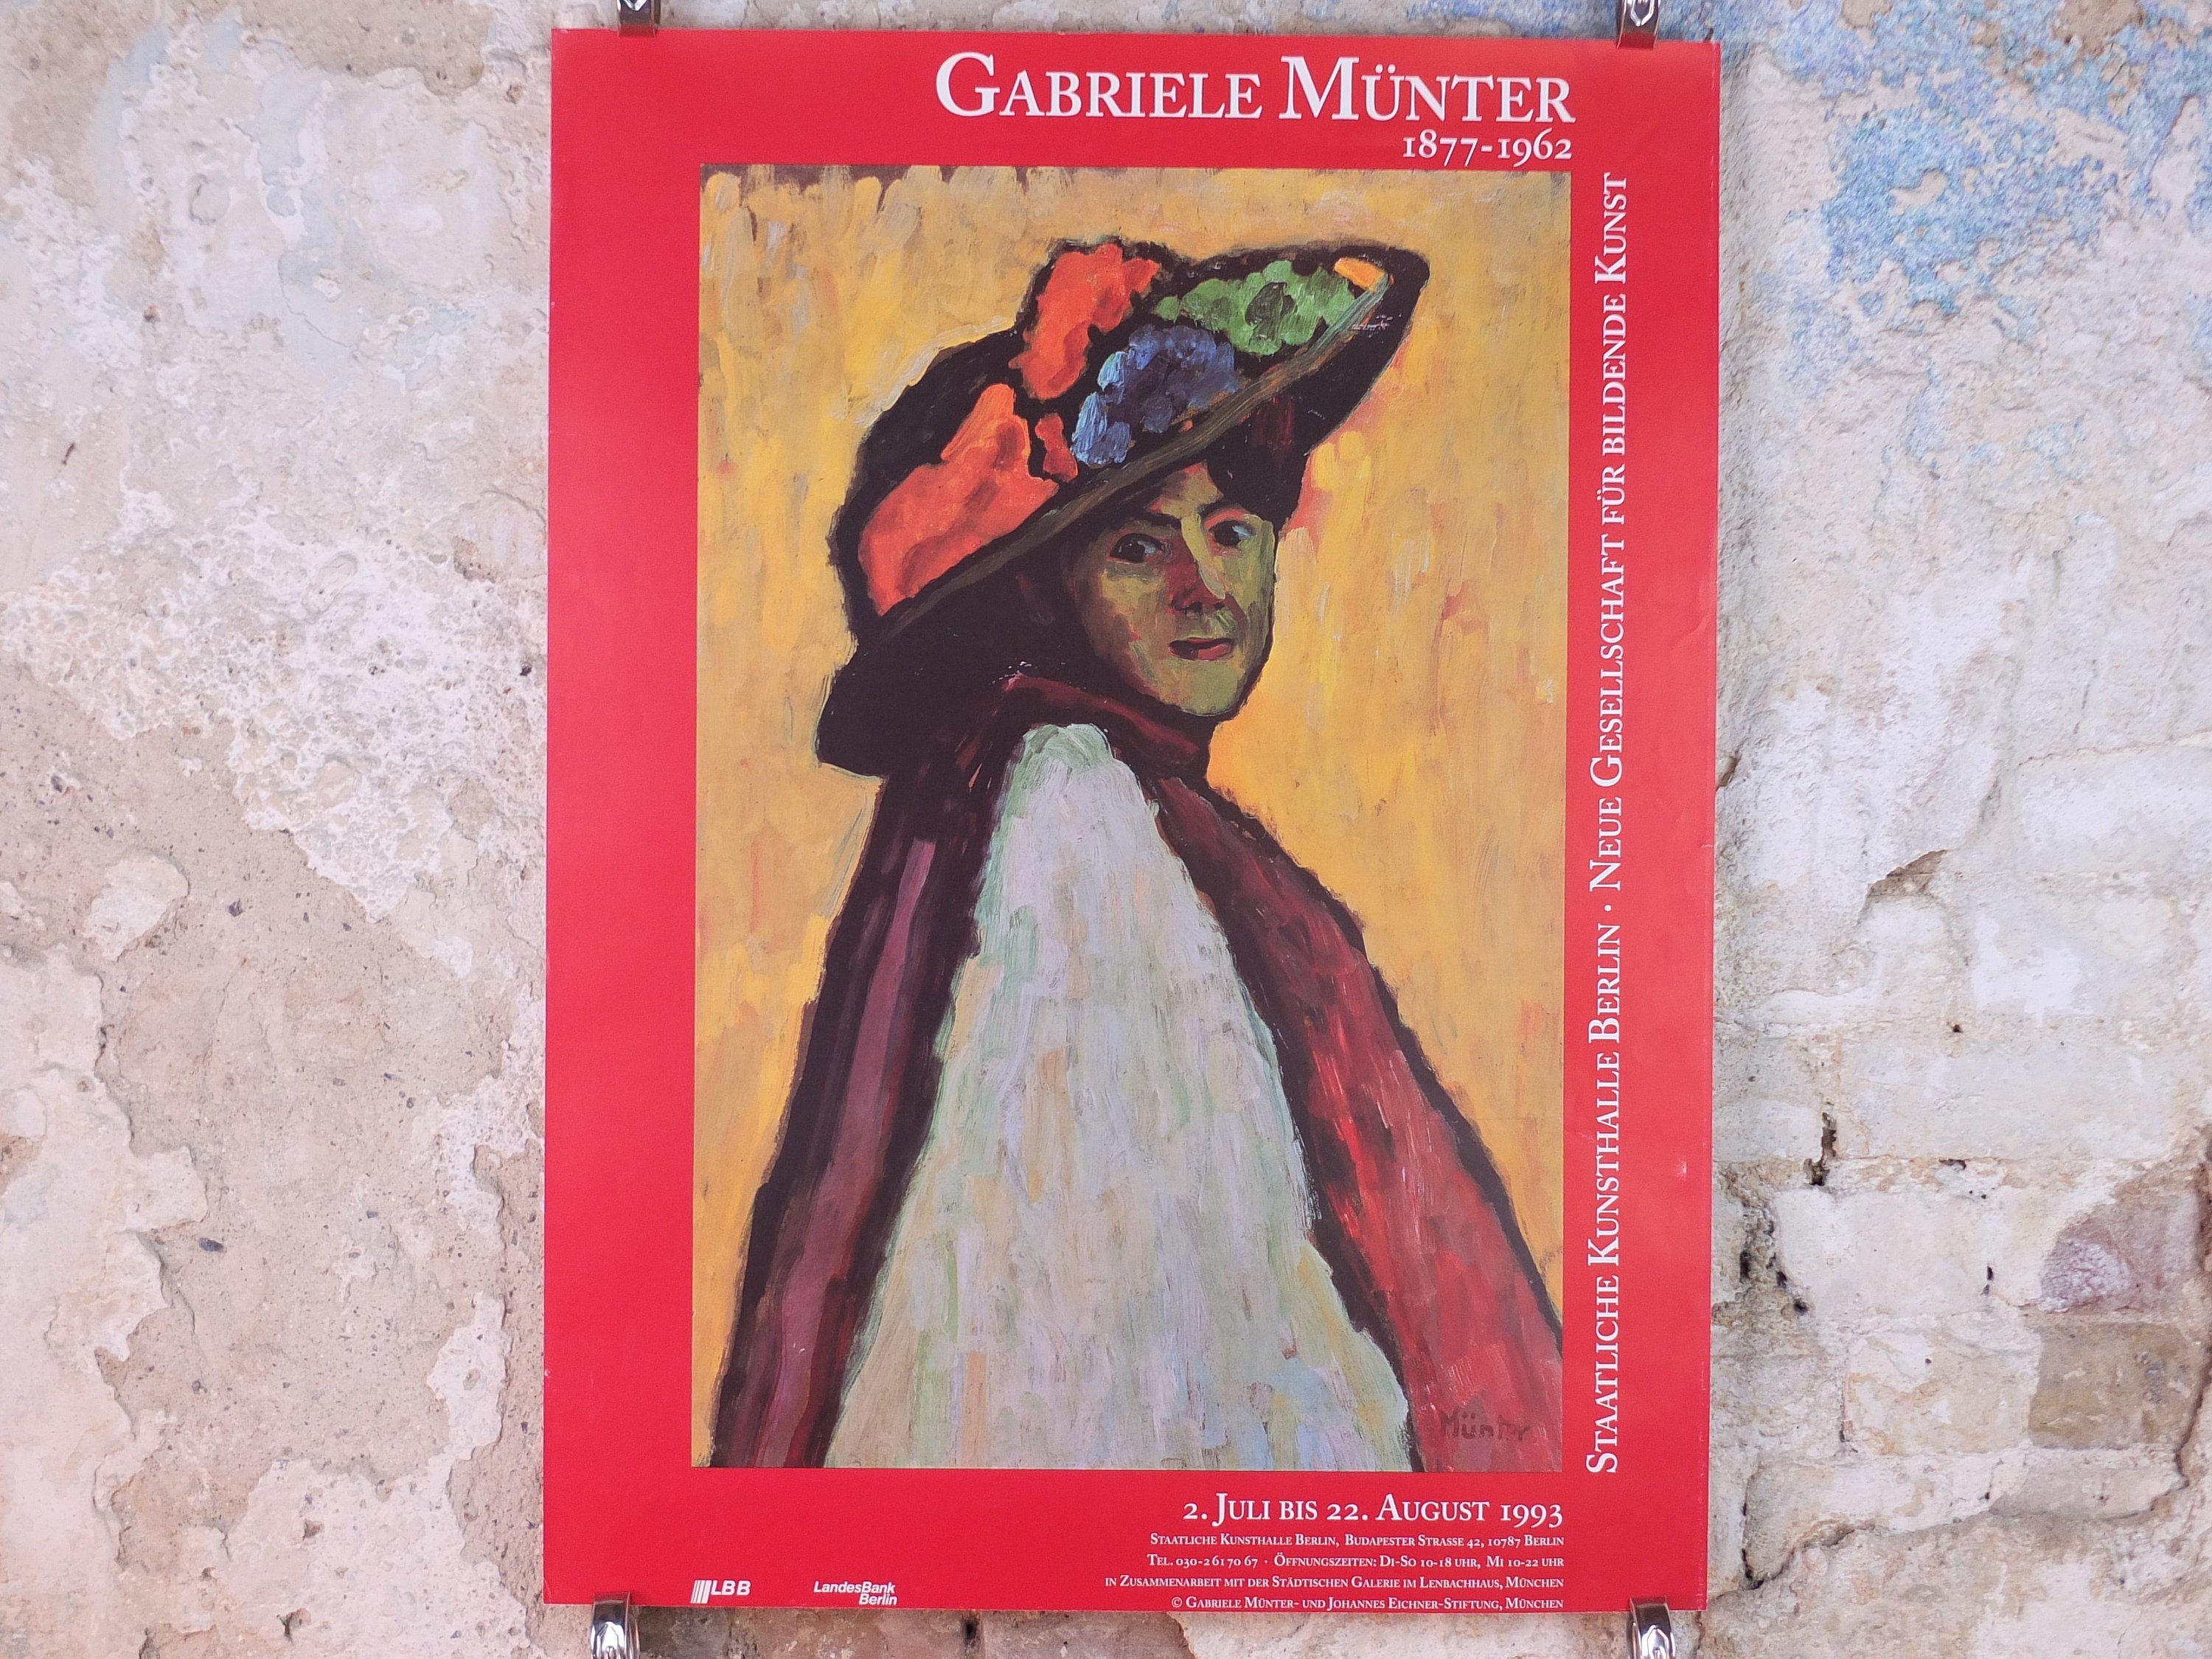 1993 Gabriele Münter Poster von Werefkin - Etsy.de